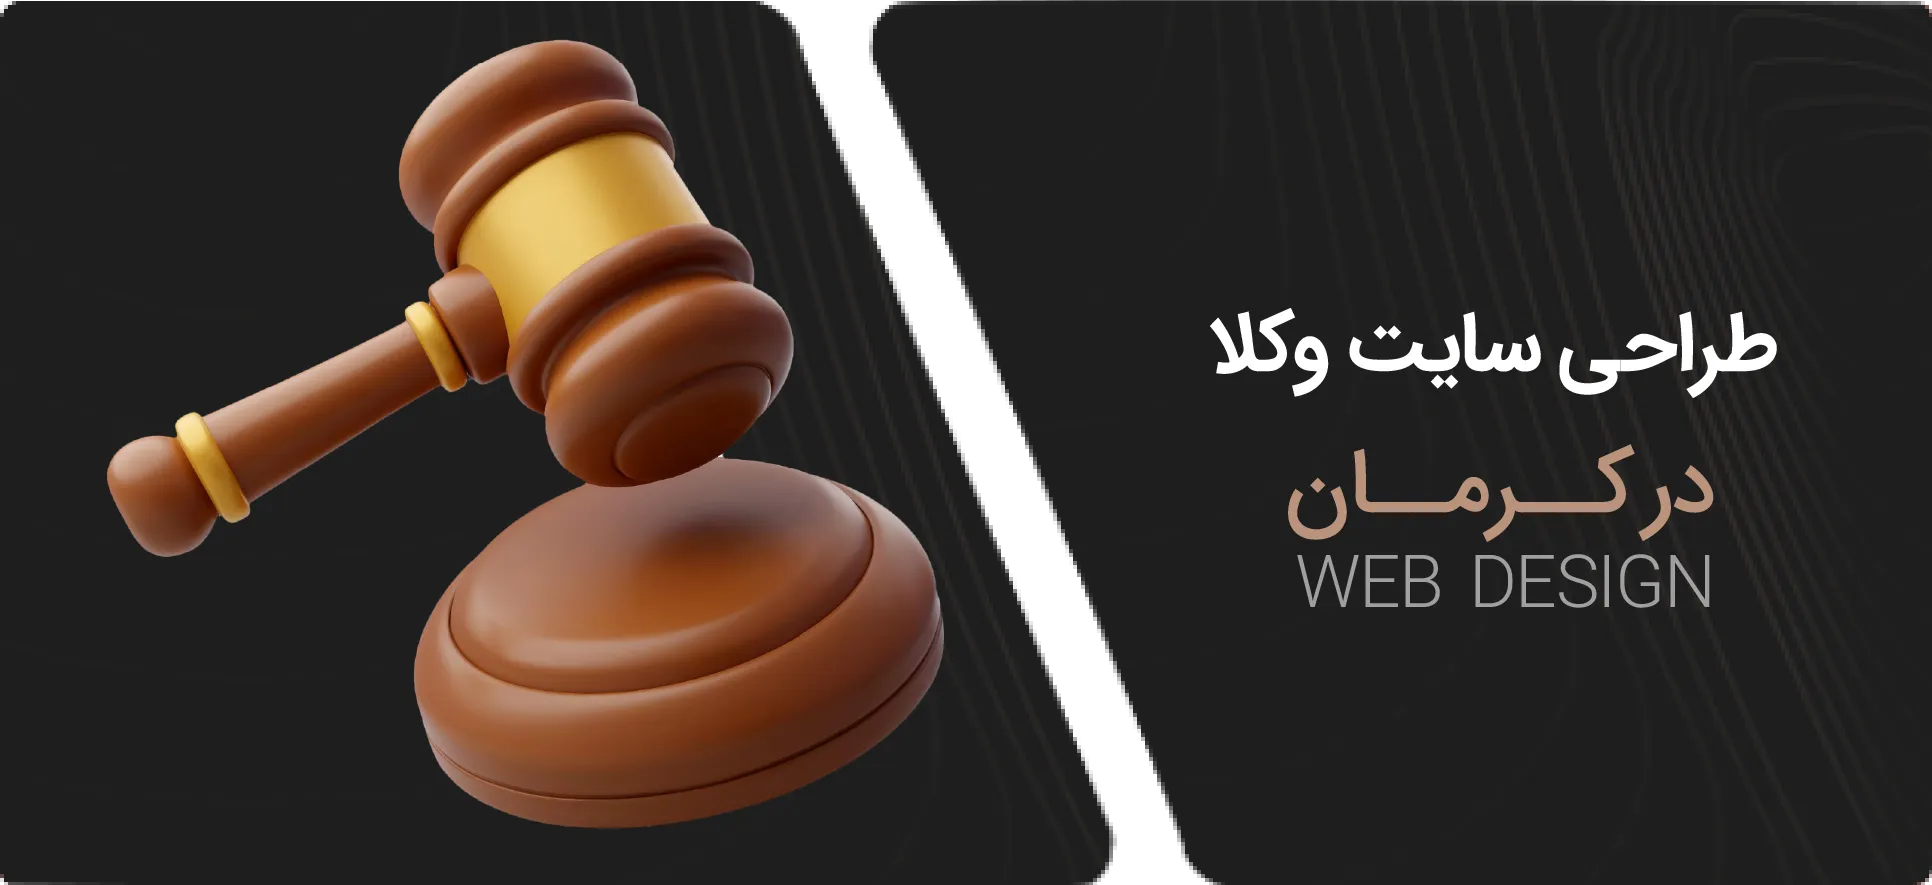 طراحی سایت وکلا در کرمان